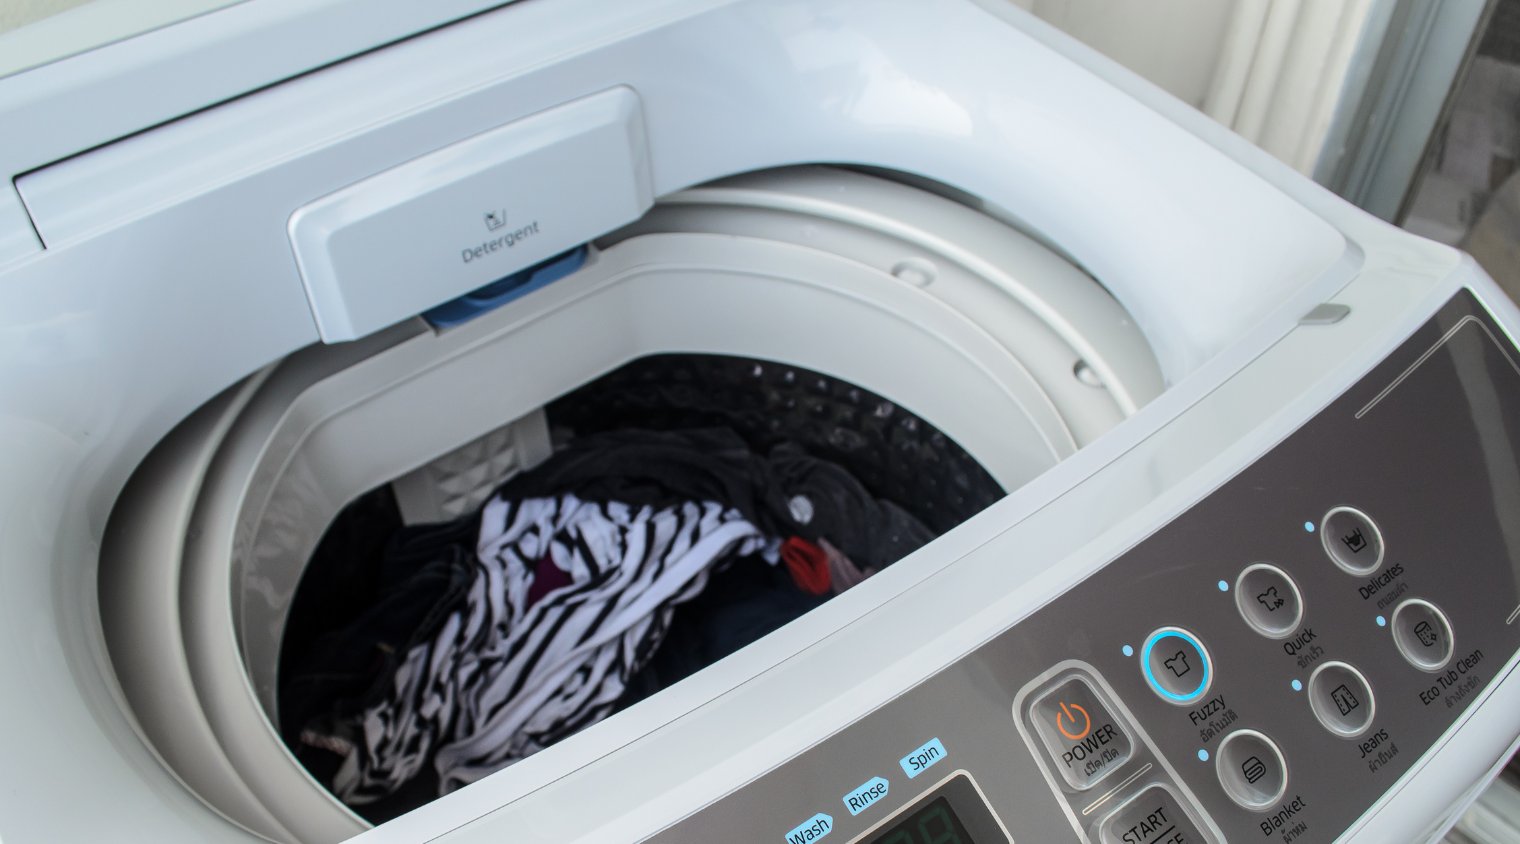 Lồng giặt không cân bằng có thể làm gián đoạn quá trình giặt